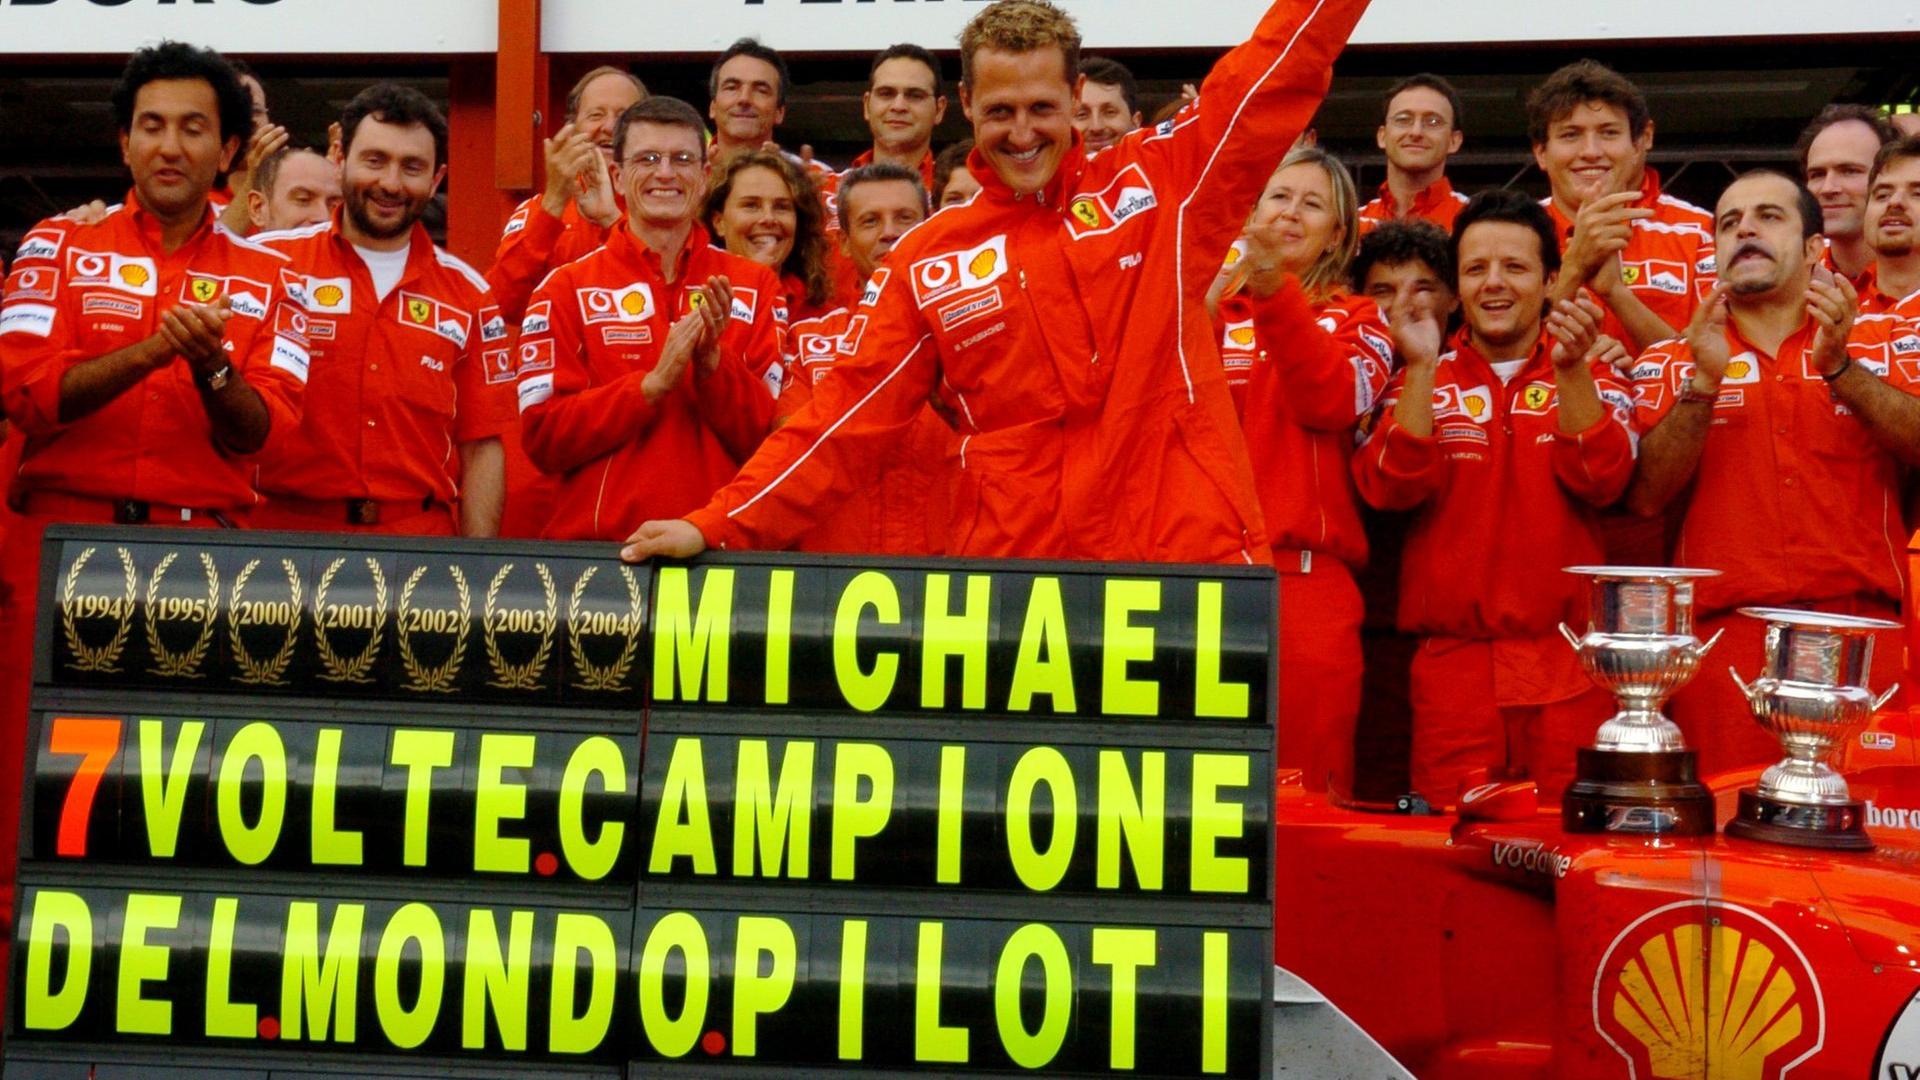 Ein unglaublicher Rekord: 2004 holt Schumacher den fünften Titel für Ferrari, seinen siebten insgesamt.